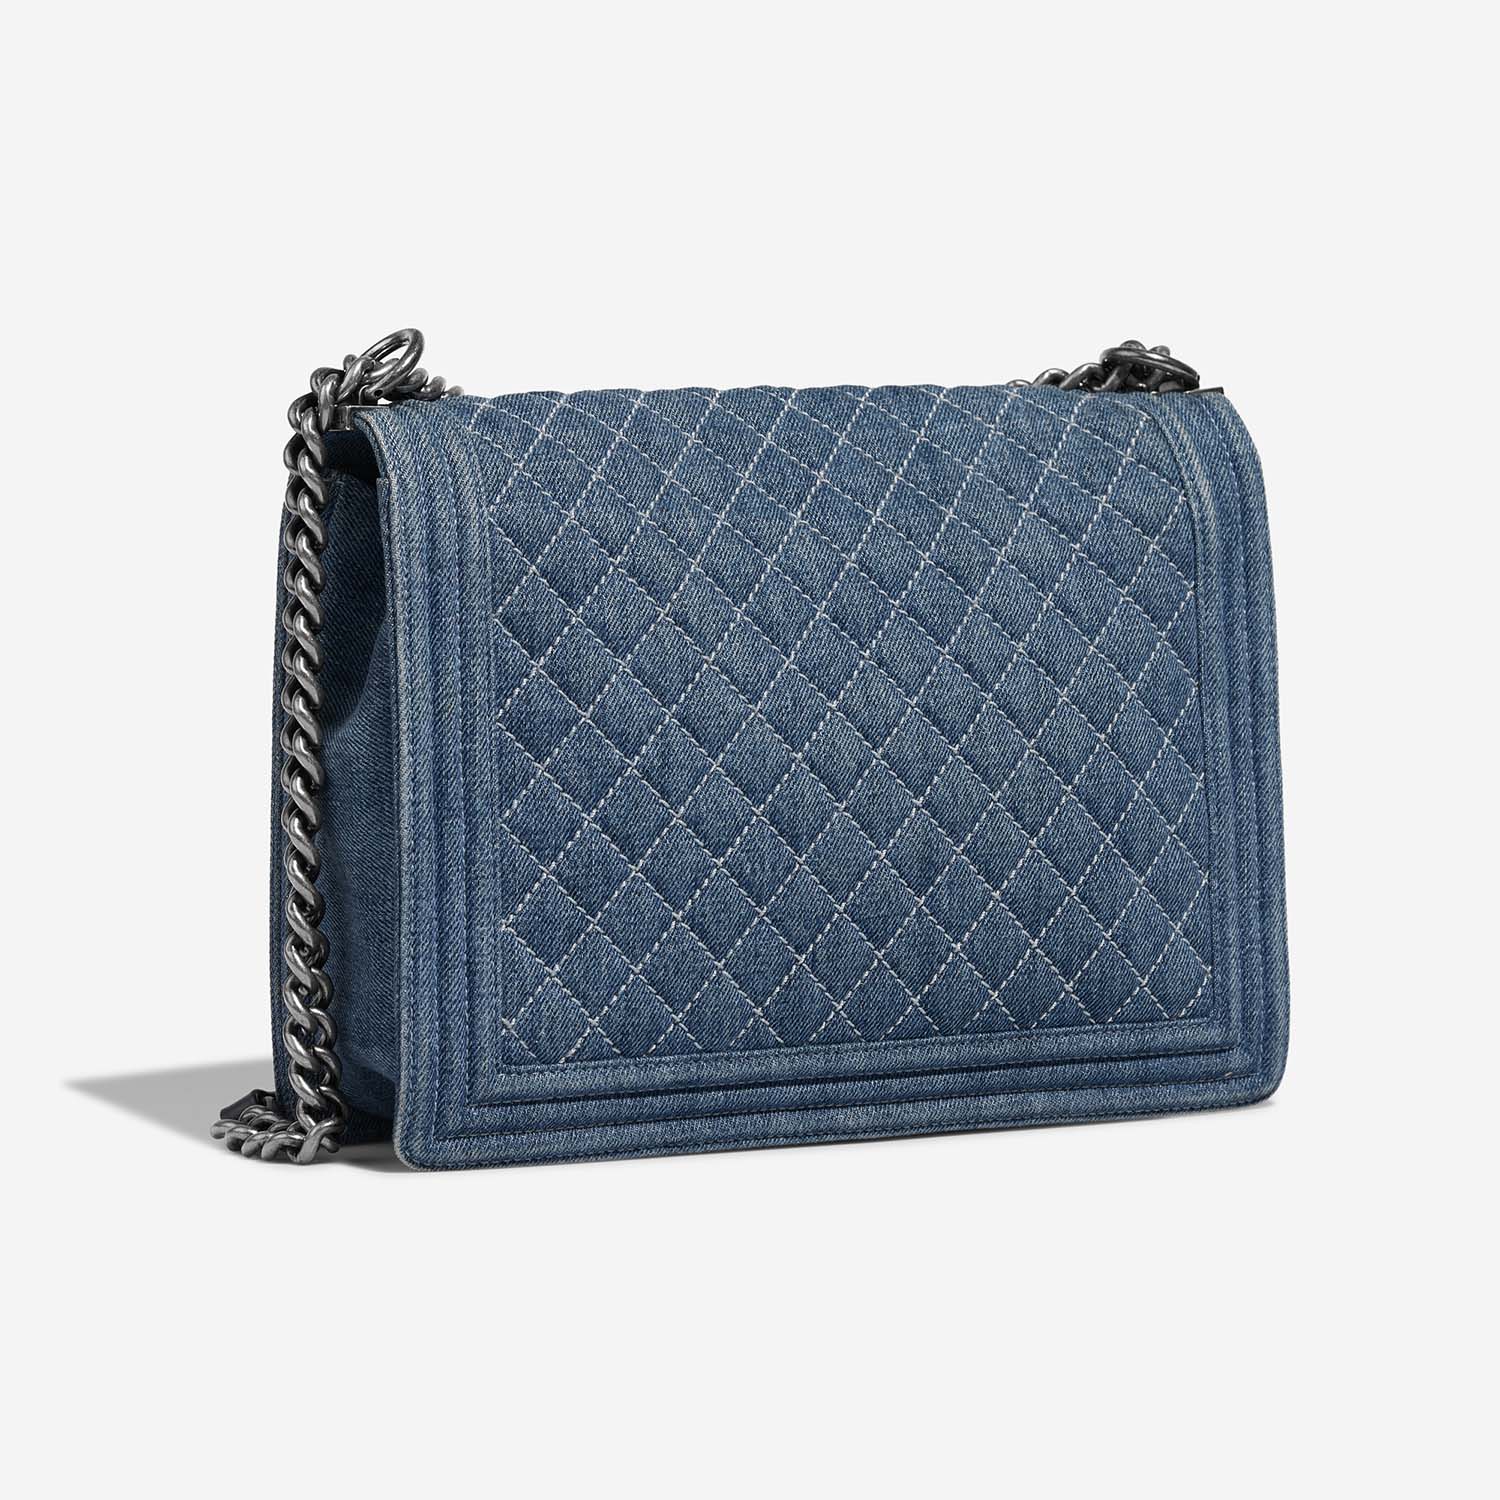 Chanel Boy Large Blue Side Back | Sell your designer bag on Saclab.com